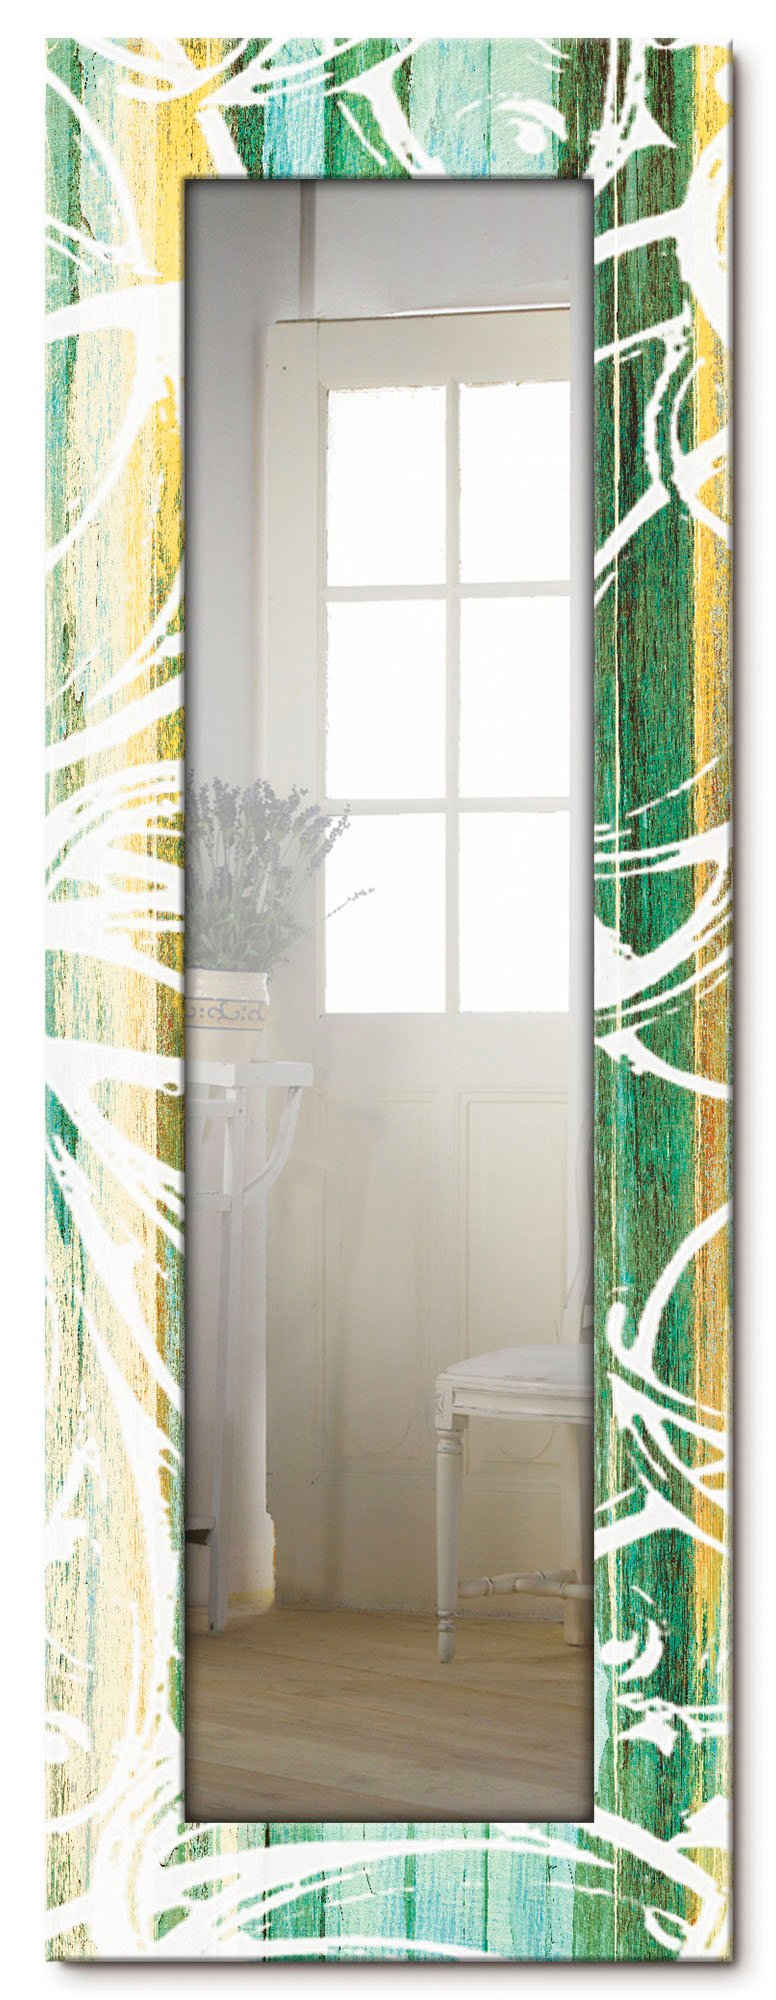 Artland Декоративное зеркало Ornamente im modernen Stil, gerahmter Ganzkörperspiegel, Настенное зеркало, mit Motivrahmen, Landhaus